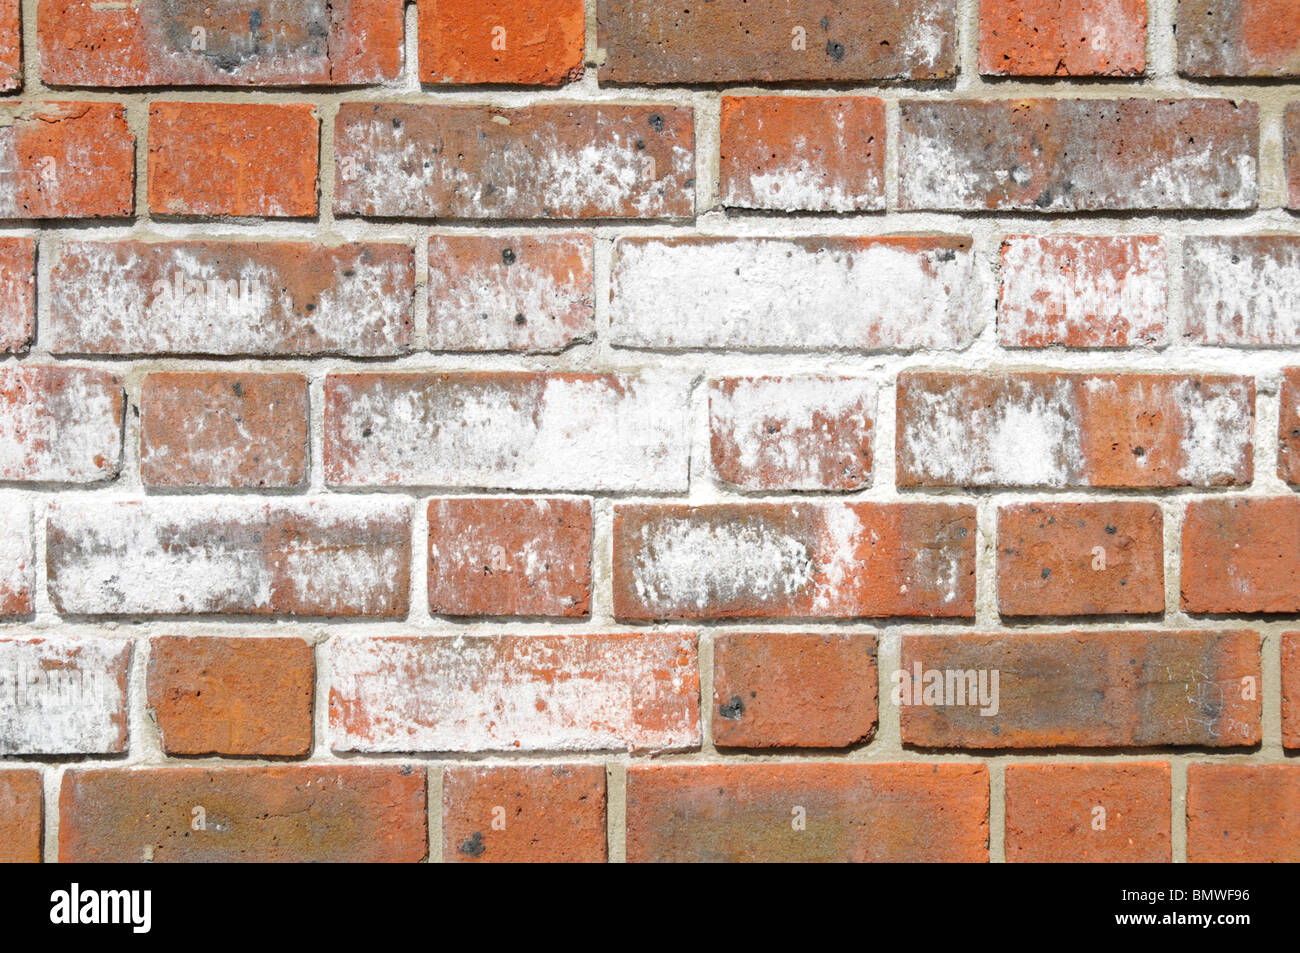 Gros plan mur de briques efflorescence blanc sel poudre défigurant aspect et coloration des matériaux de construction de briques rouges externes Londres Angleterre Royaume-Uni Banque D'Images